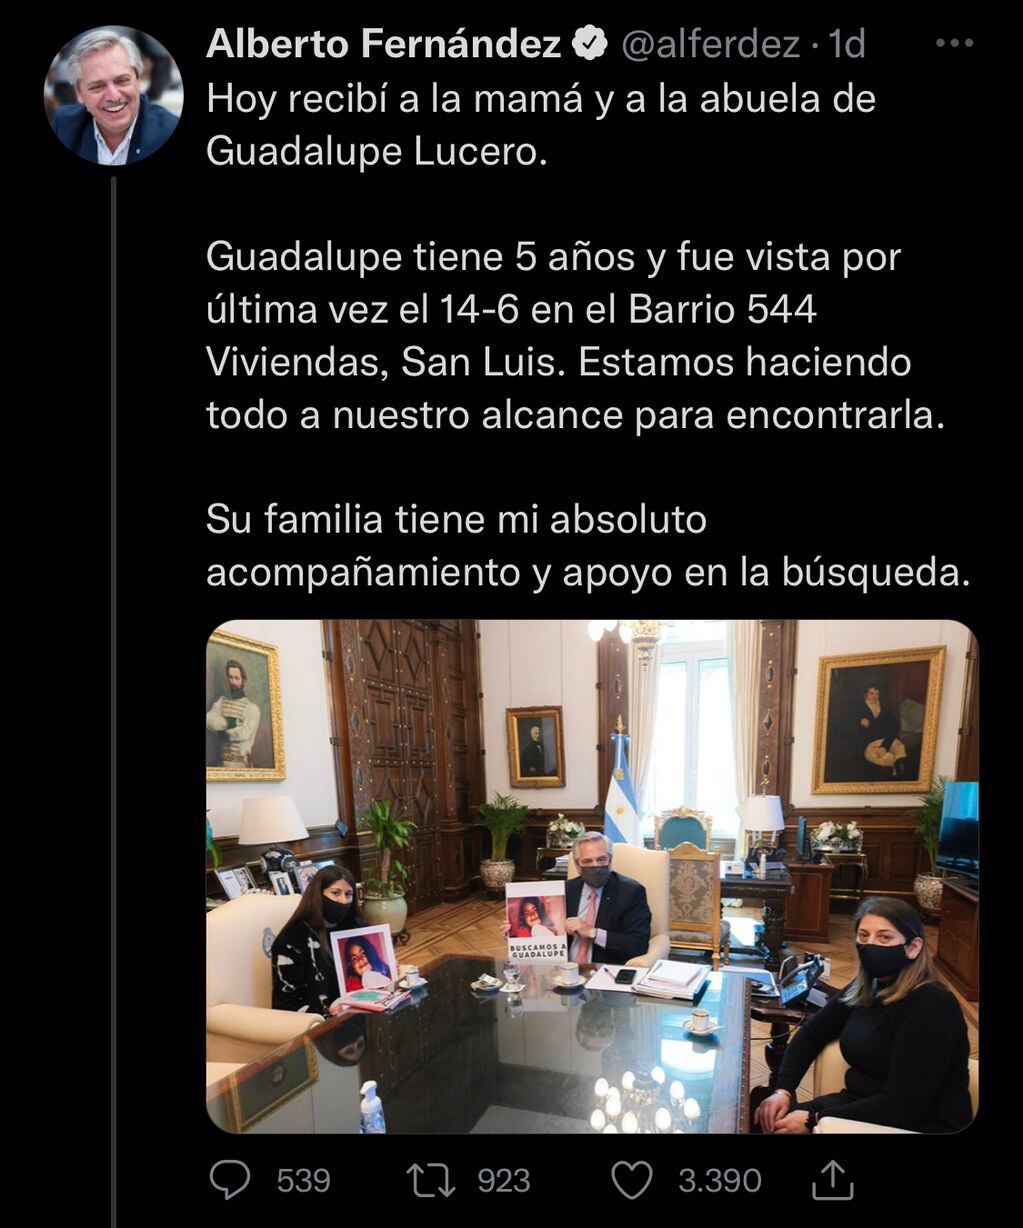 El tweet de Alberto Fernández sobre su encuentro con la mamá y abuela de Guadalupe.